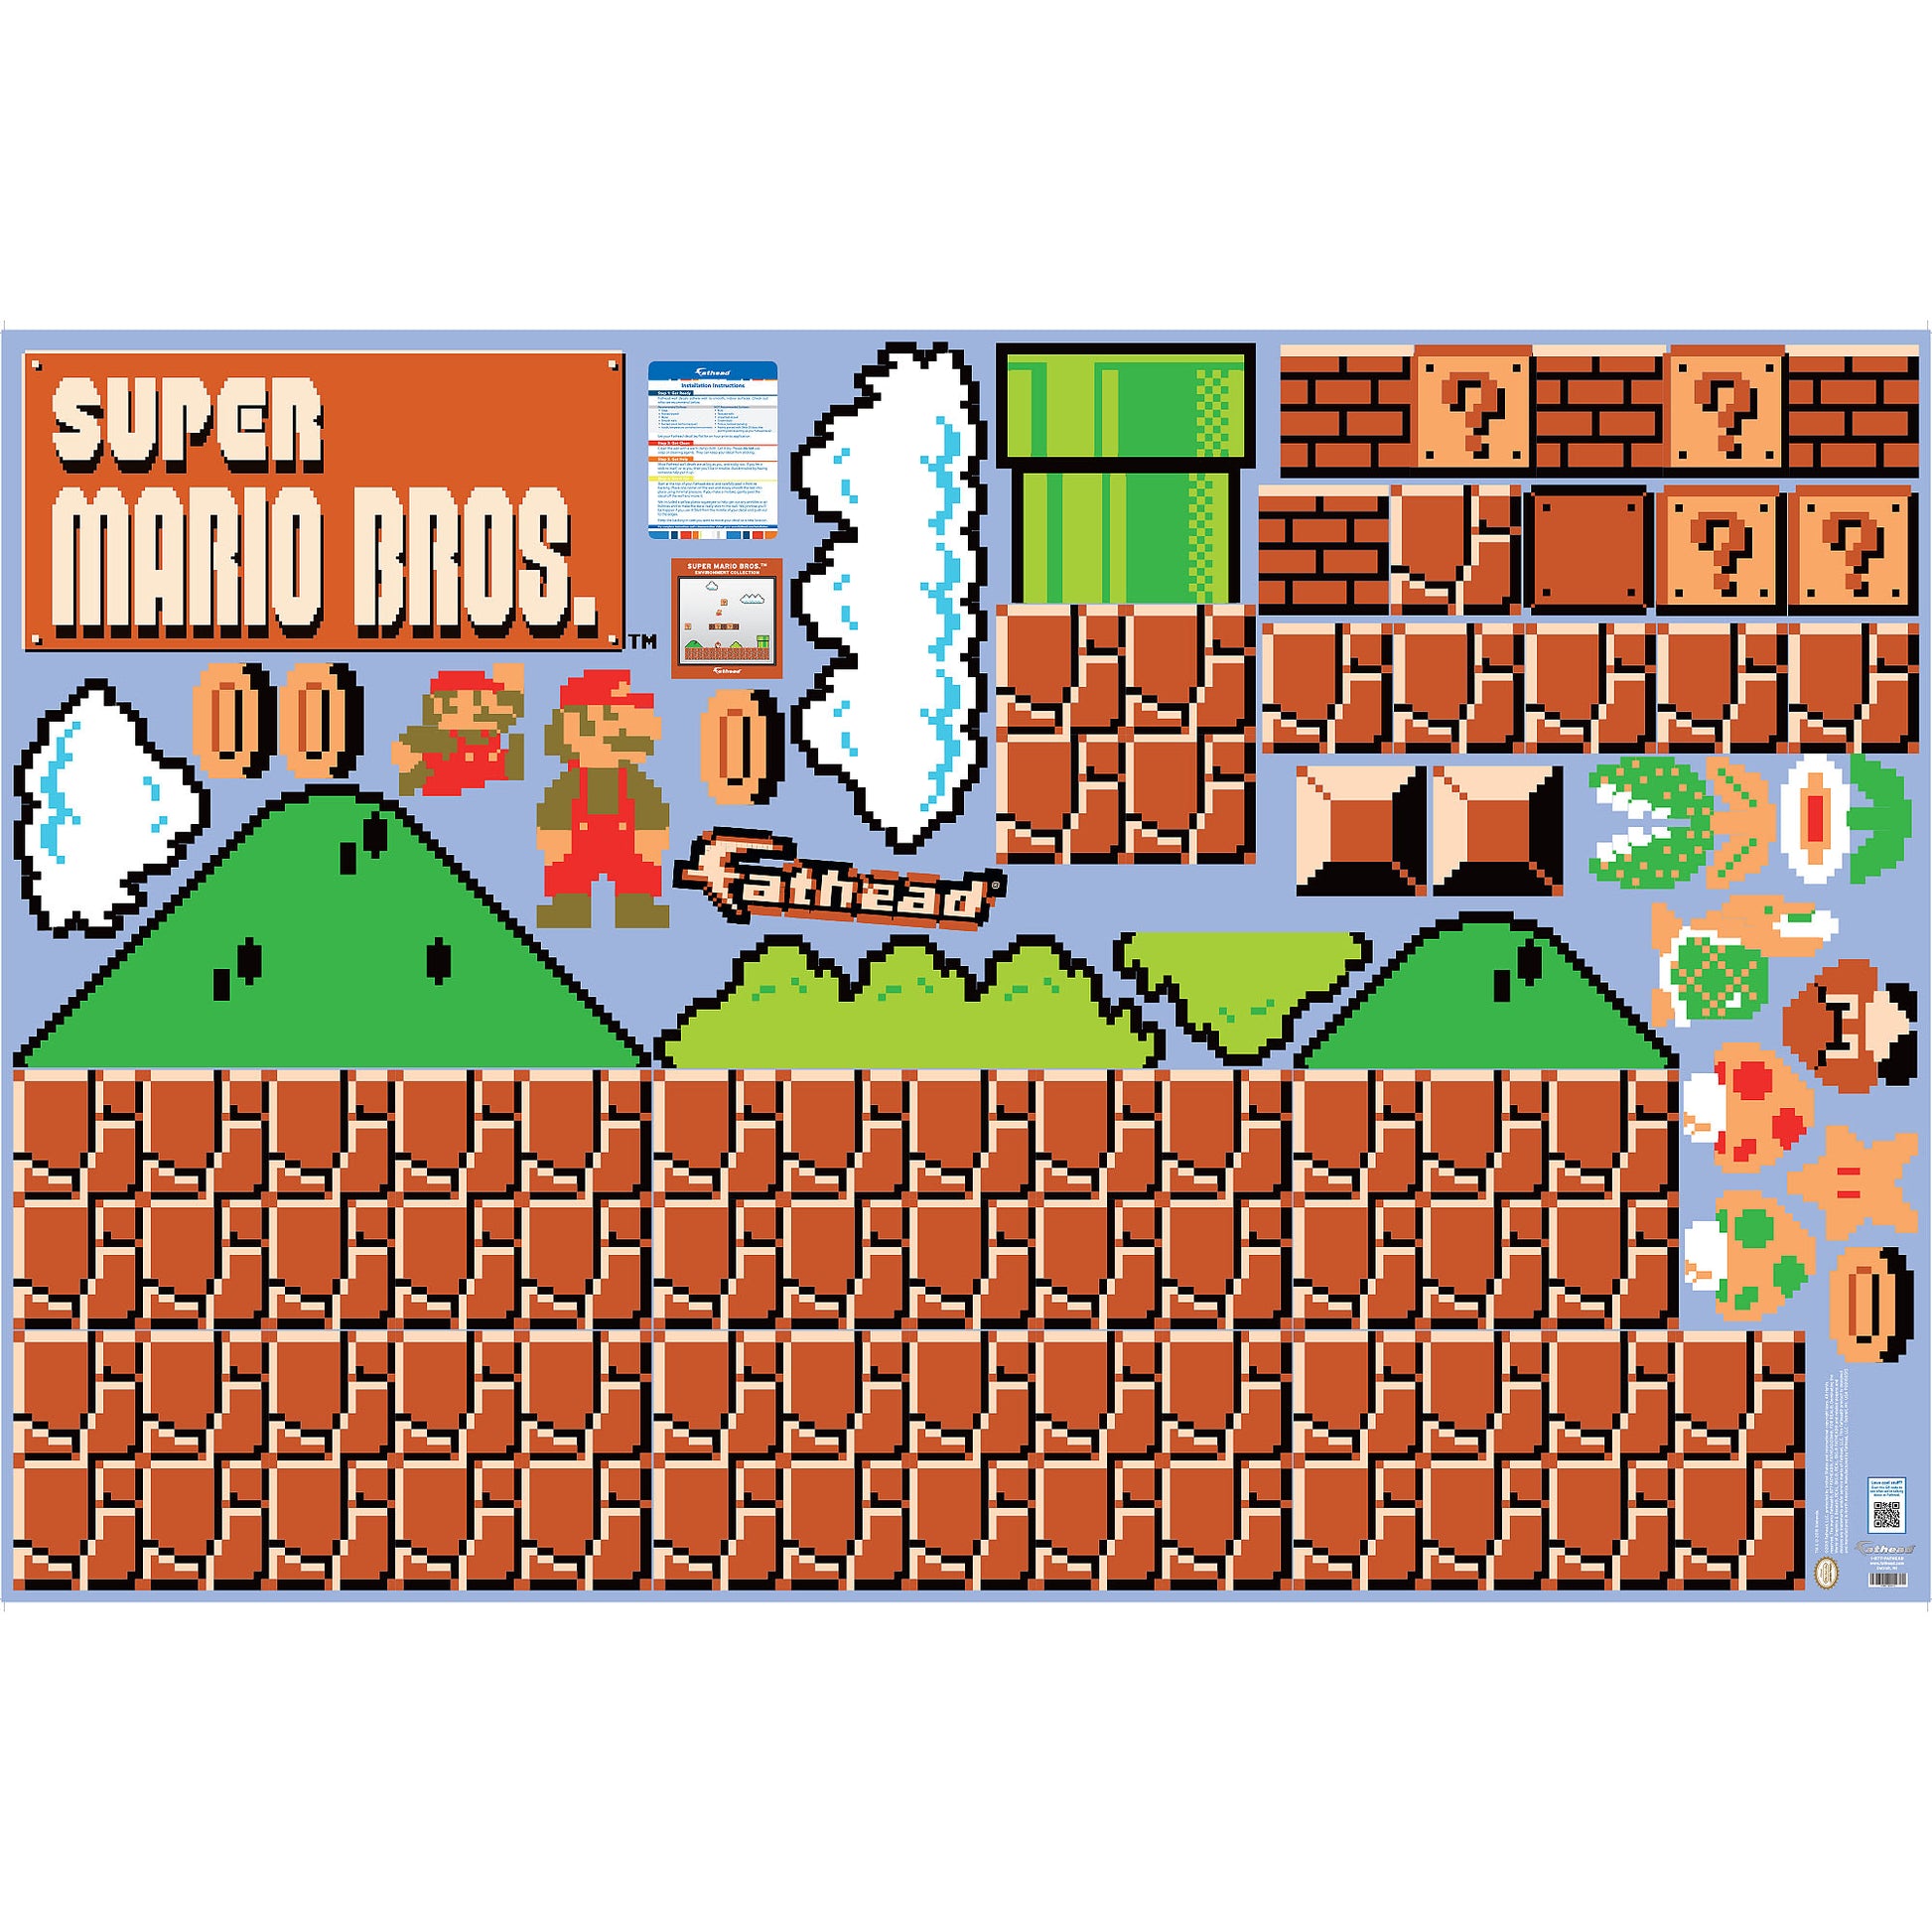 Super Mario Bros. theme, Nintendo